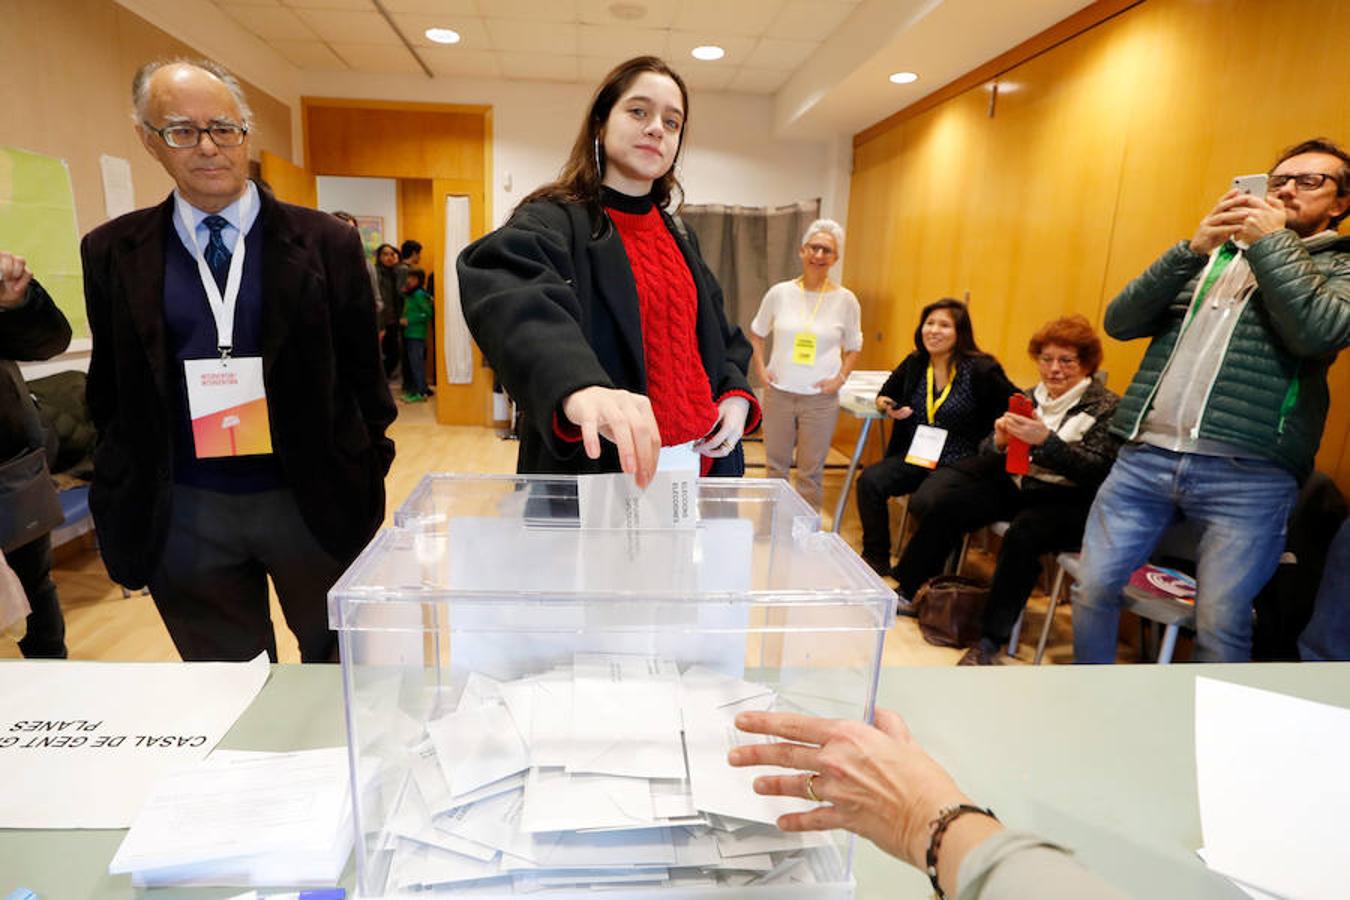 Laura Sancho una joven de 18 años, vota por primera vez en su vida. 